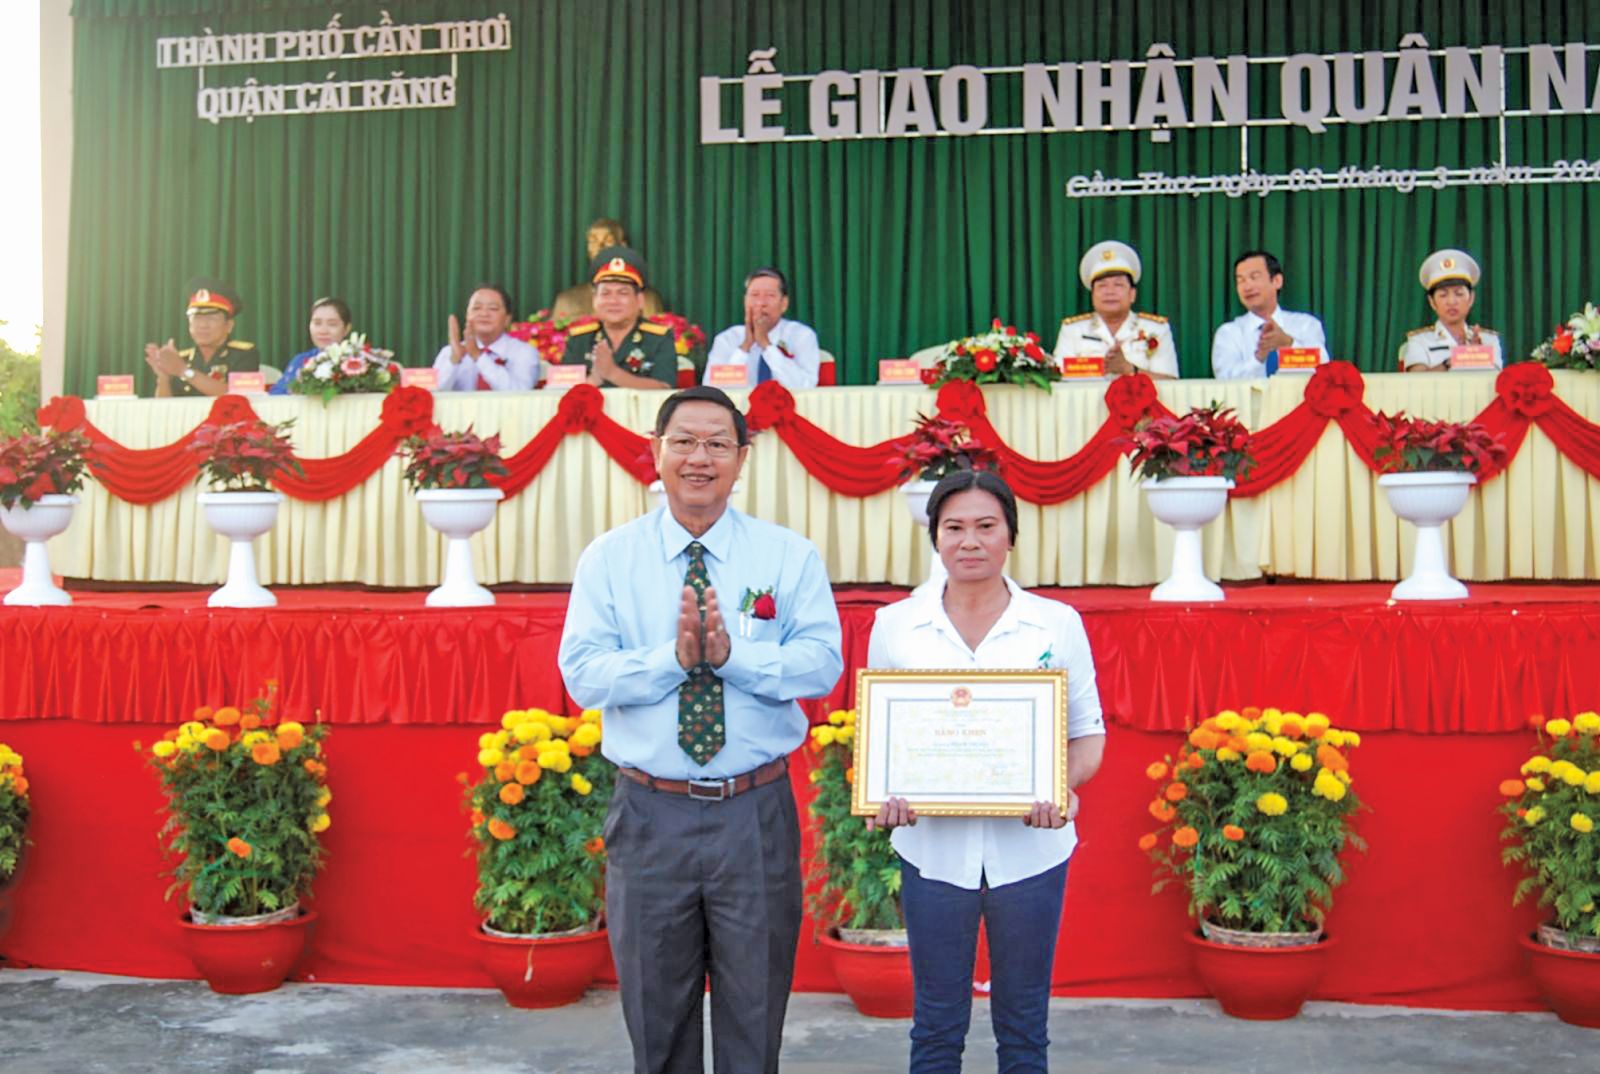 Đồng chí Lê Văn Tâm trao bằng khen cho các gia đình có thành tích tiêu biểu trong công tác tuyển chọn và gọi công dân nhập ngũ ở quận Cái Răng. Ảnh: TUYẾT NHUNG